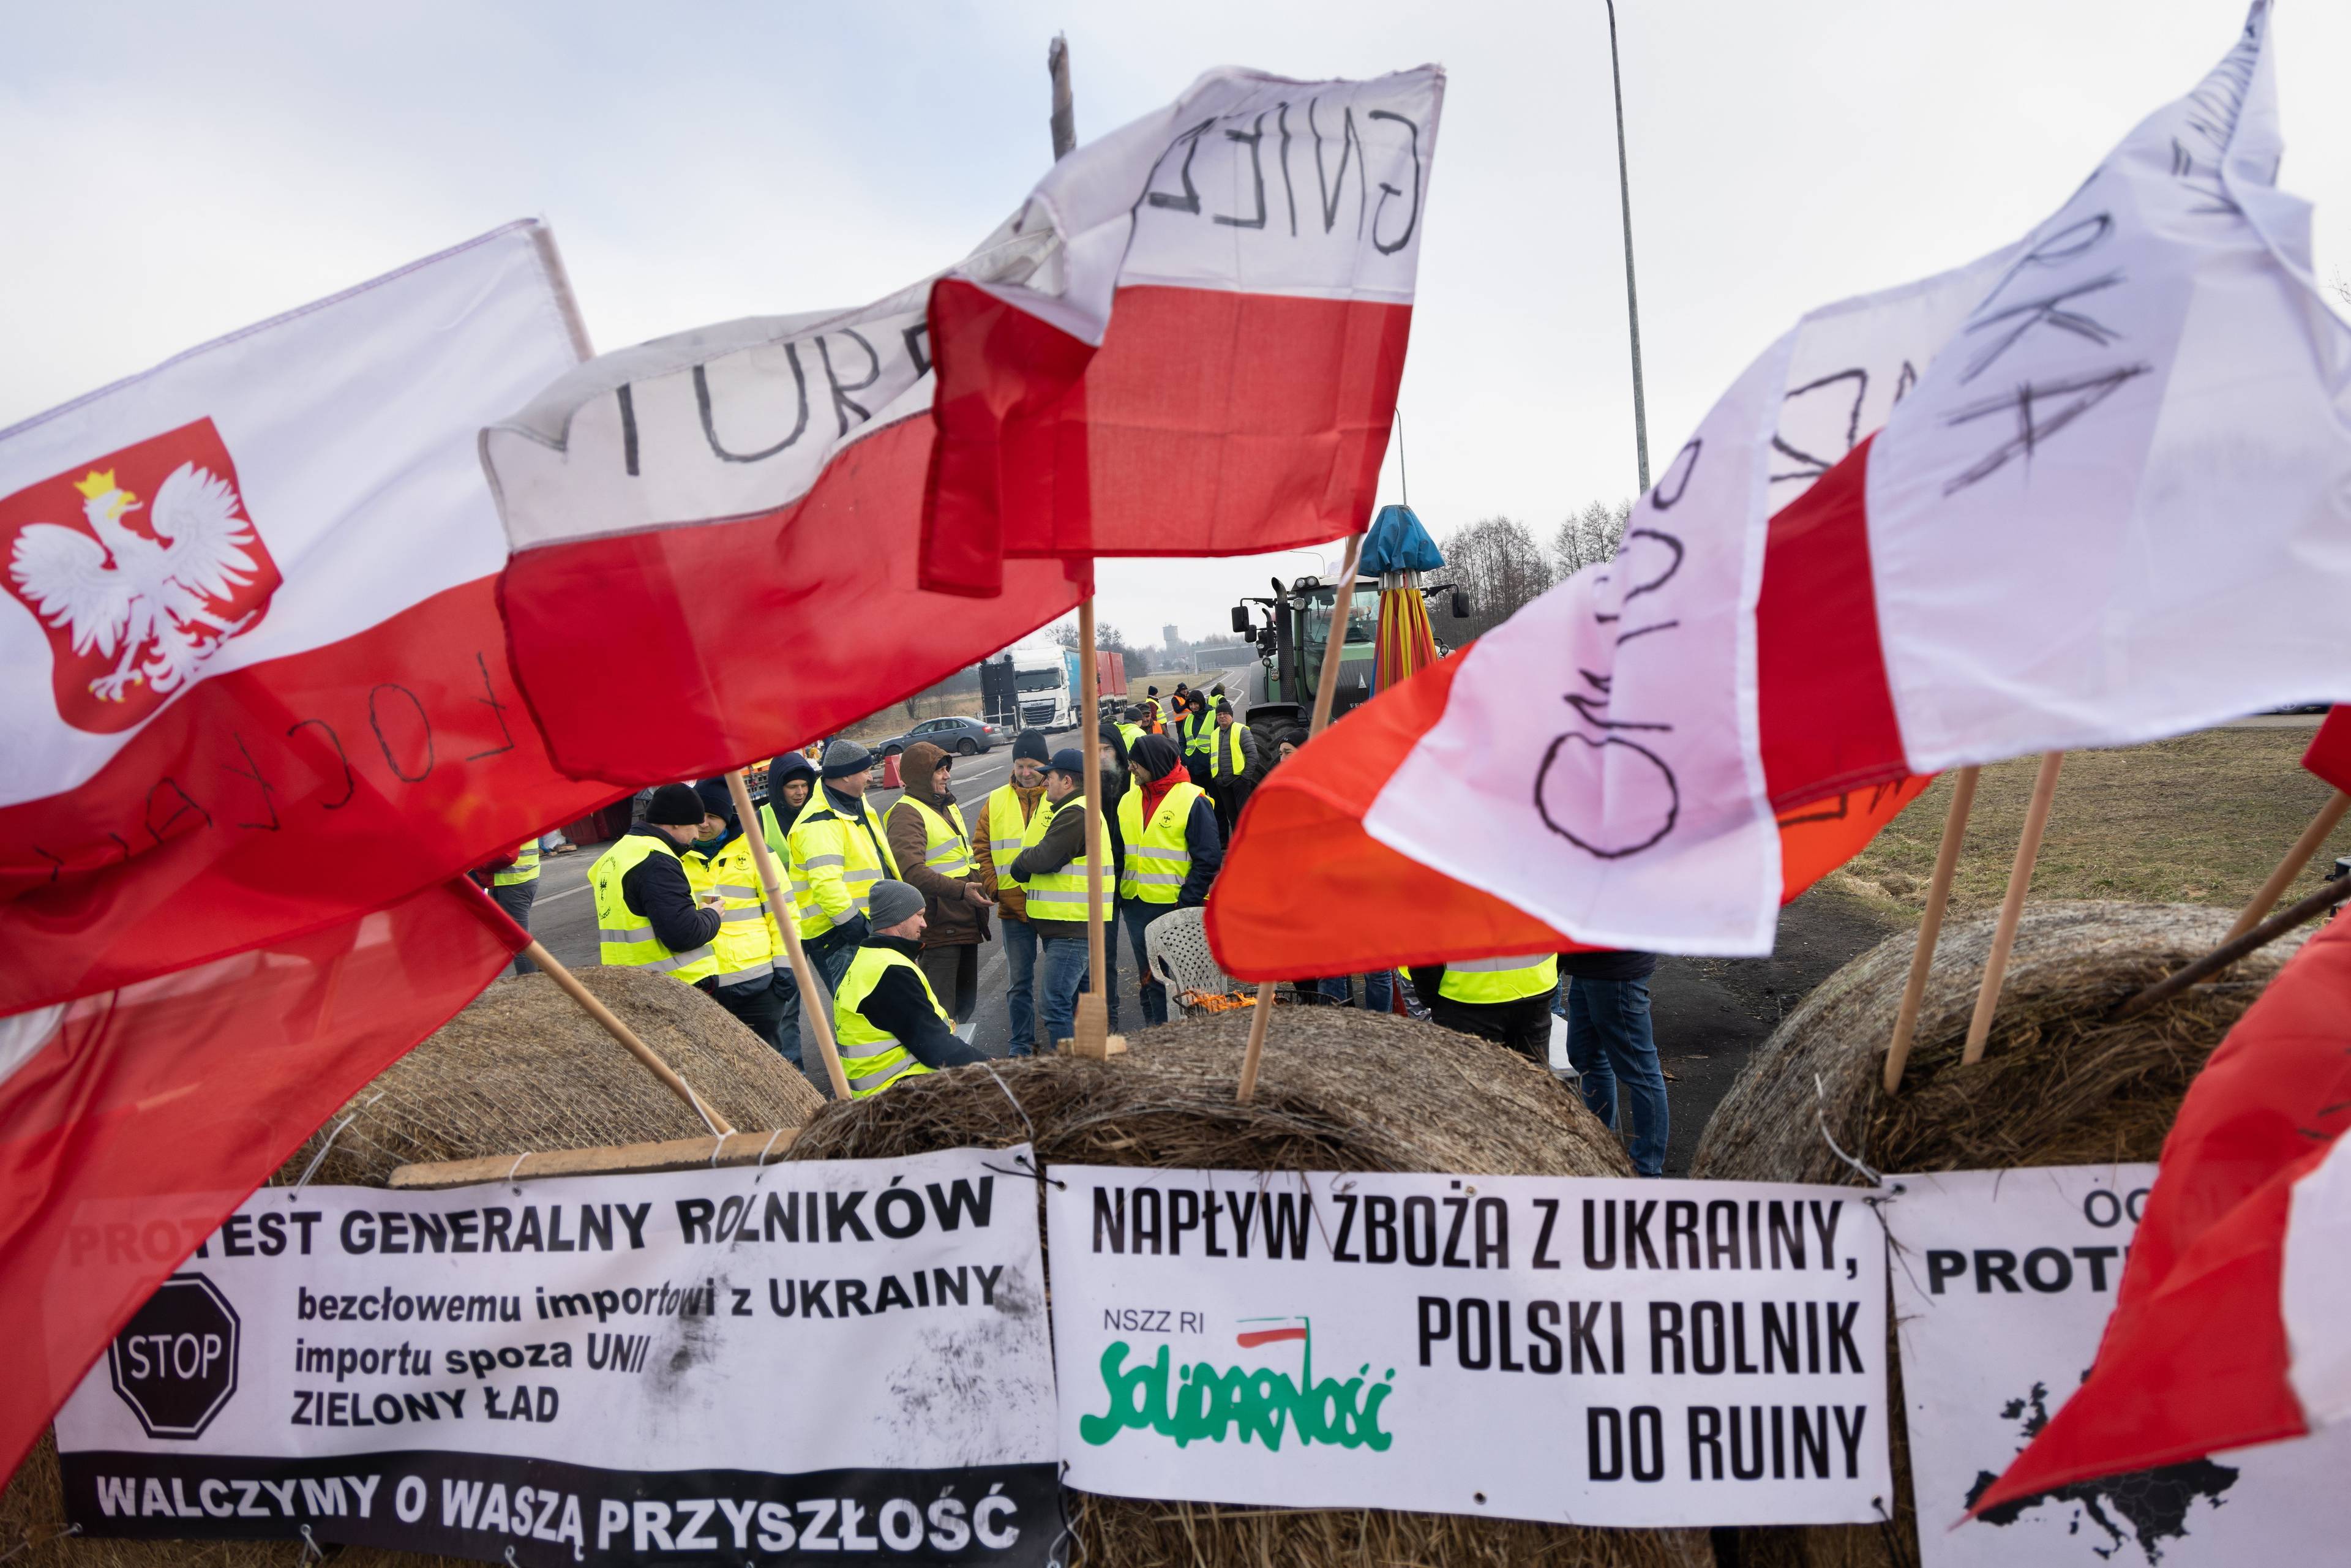 polskie flagi i banery "napływ zboża z ukrainy, polski rolnik do ruiny"